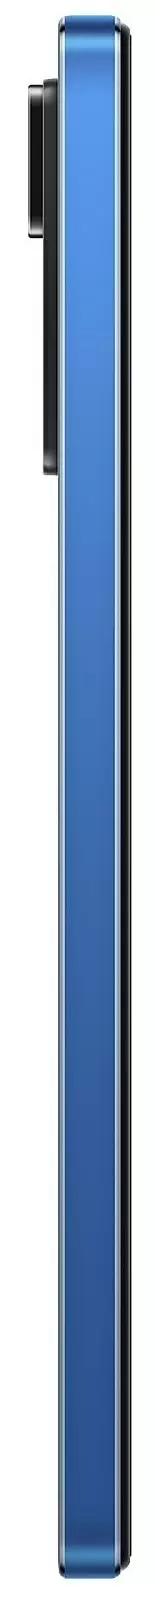 Smartphone Xiaomi Redmi Note 11 Pro 5G 6/128GB, albastru